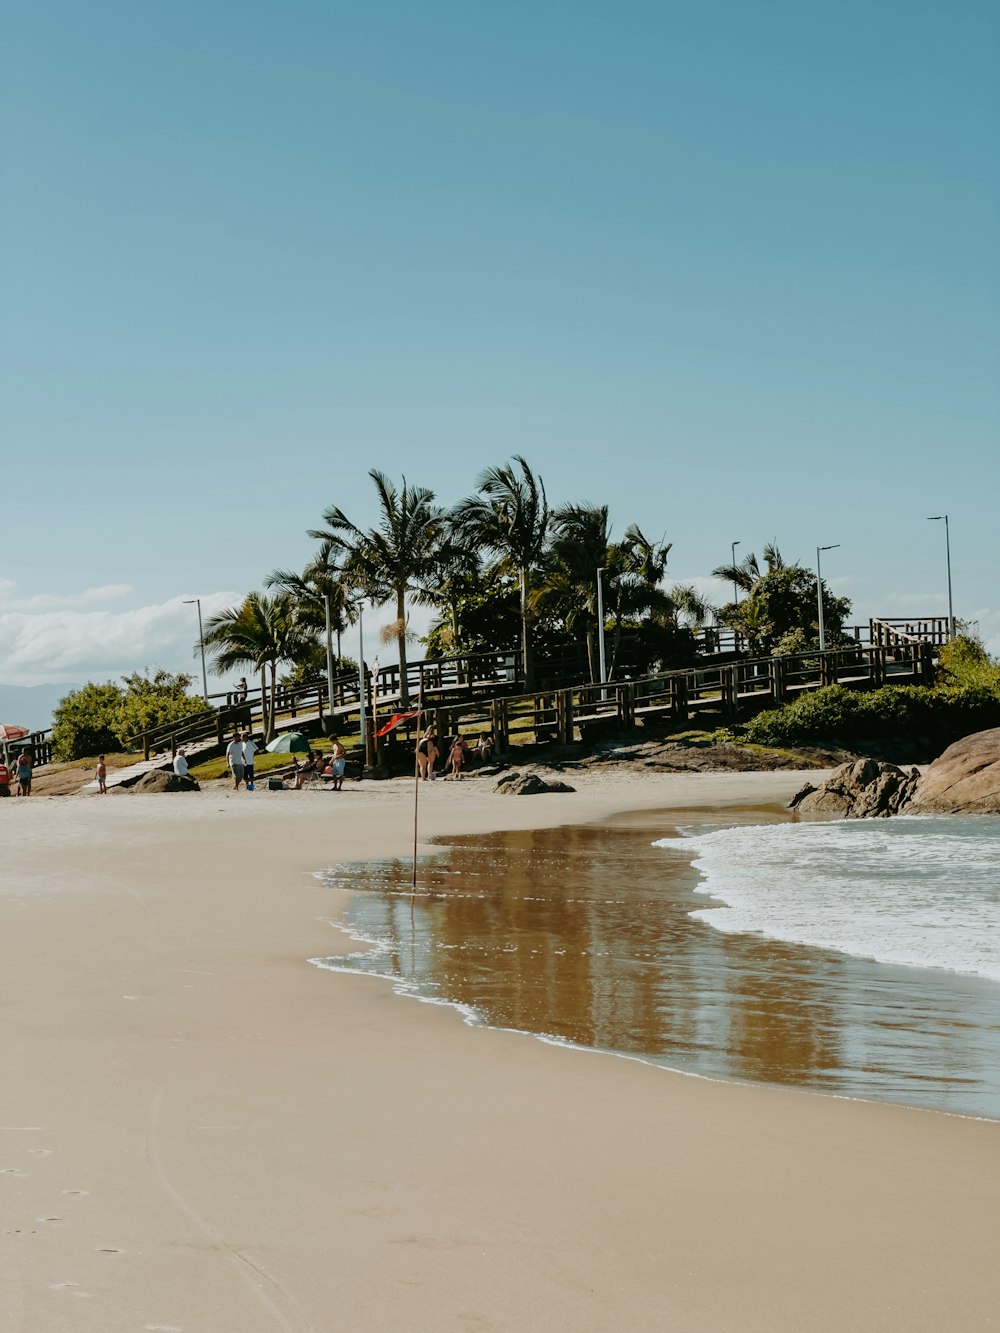 Una playa de arena junto al océano con palmeras